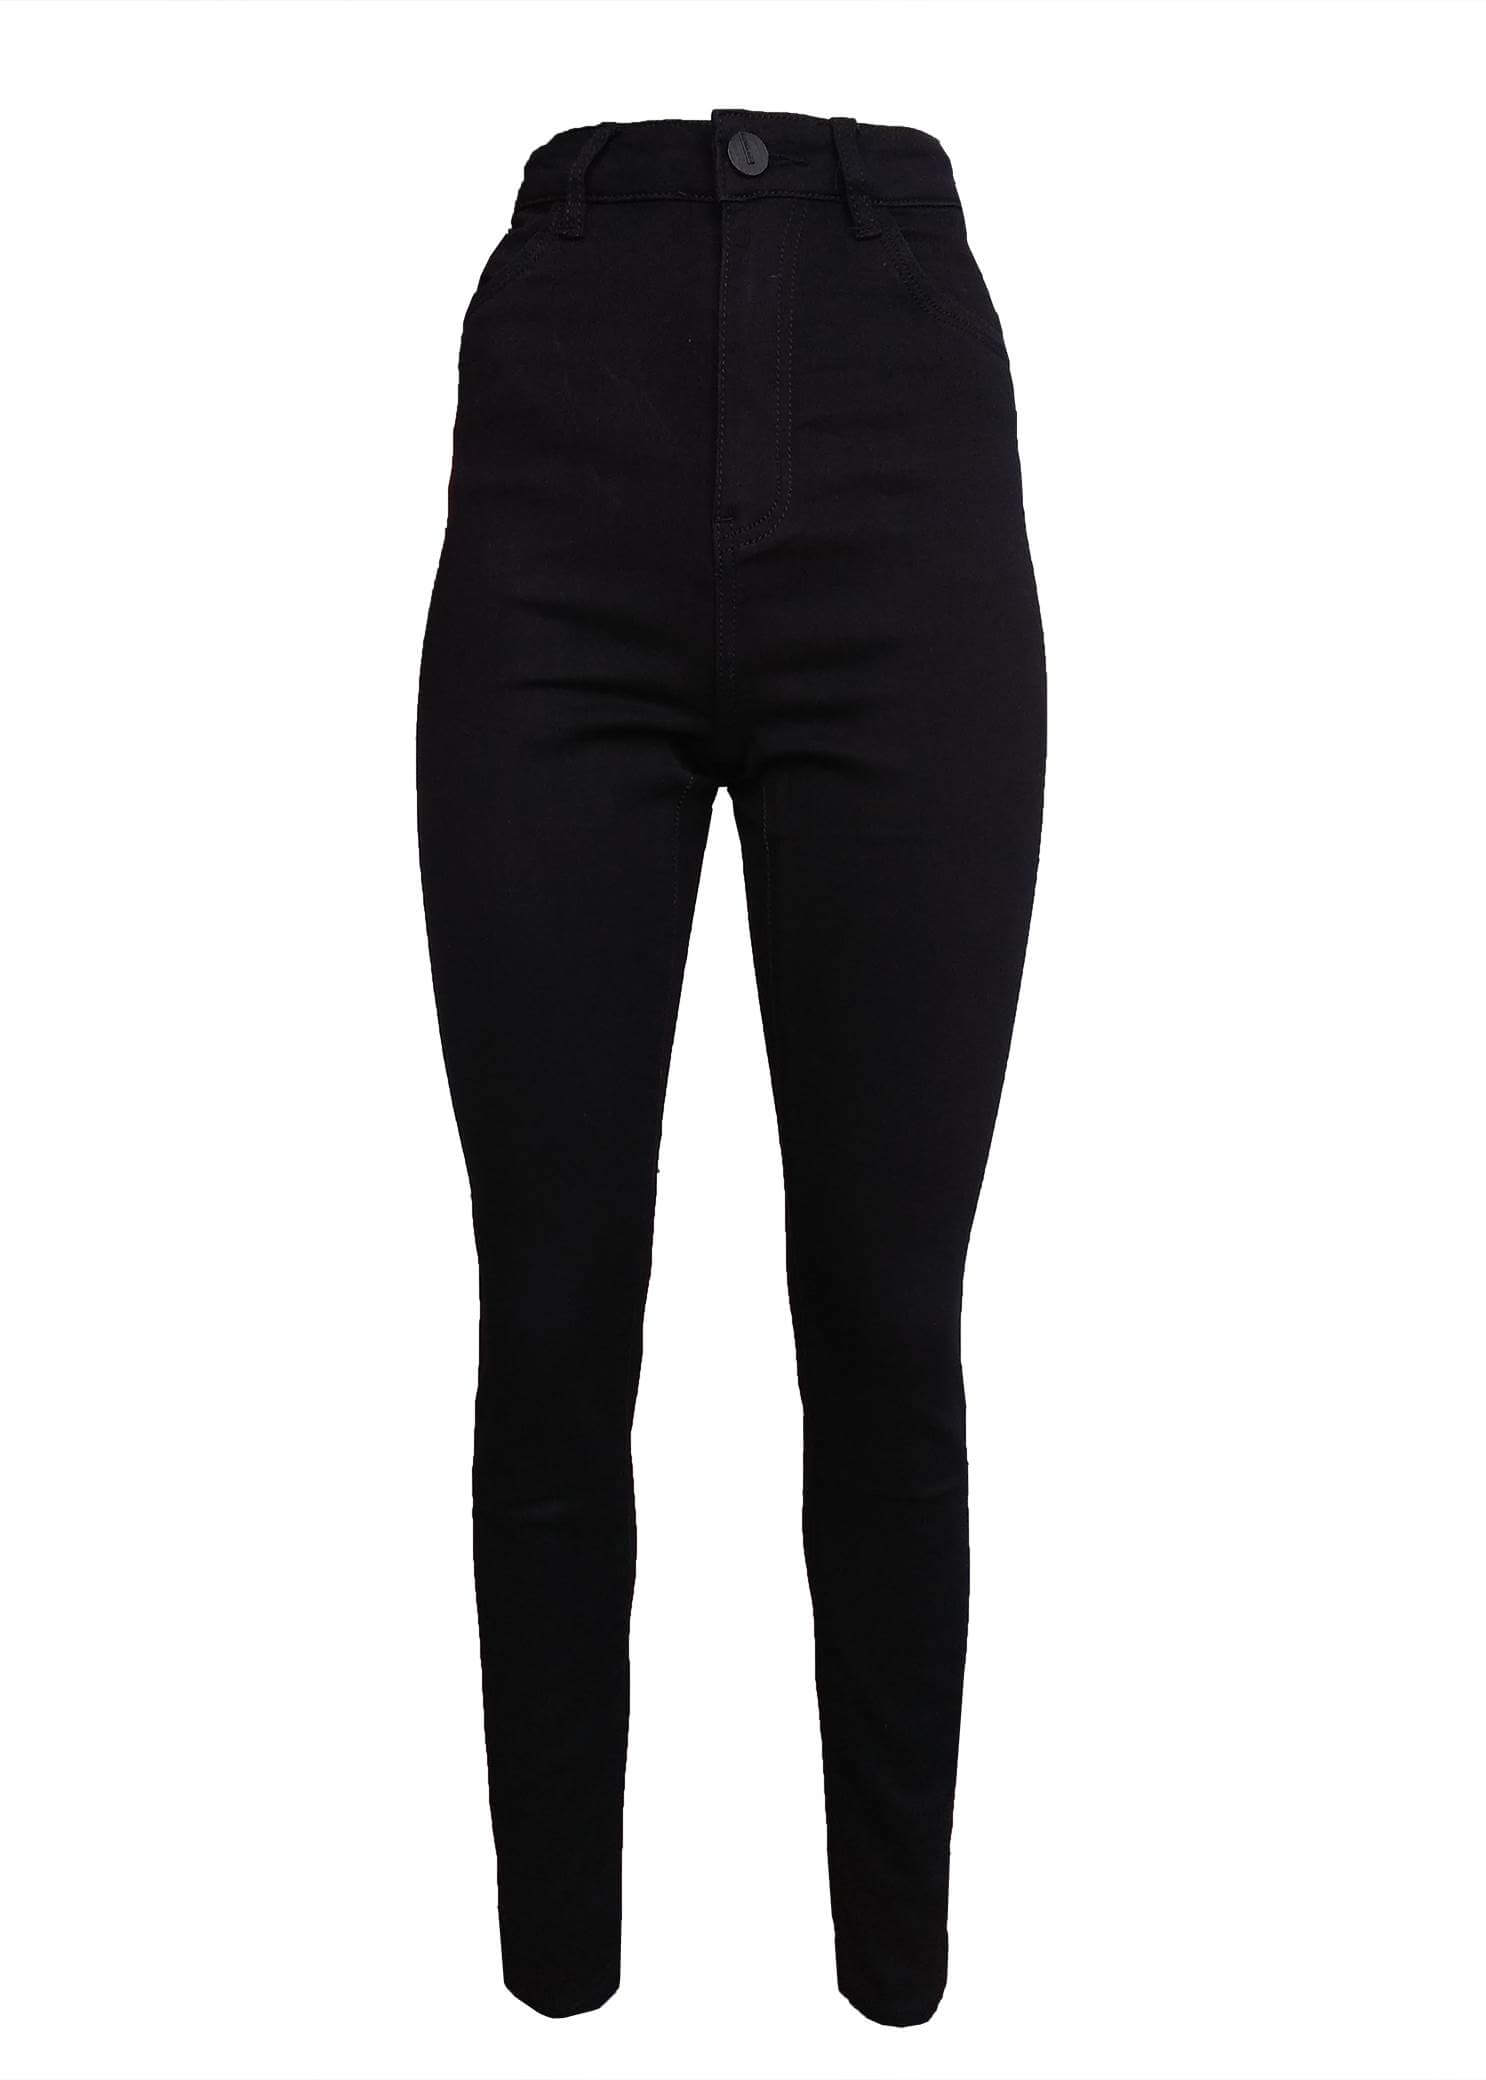 Чорні жіночі вузькі джинси з високою посадкою # W0038С